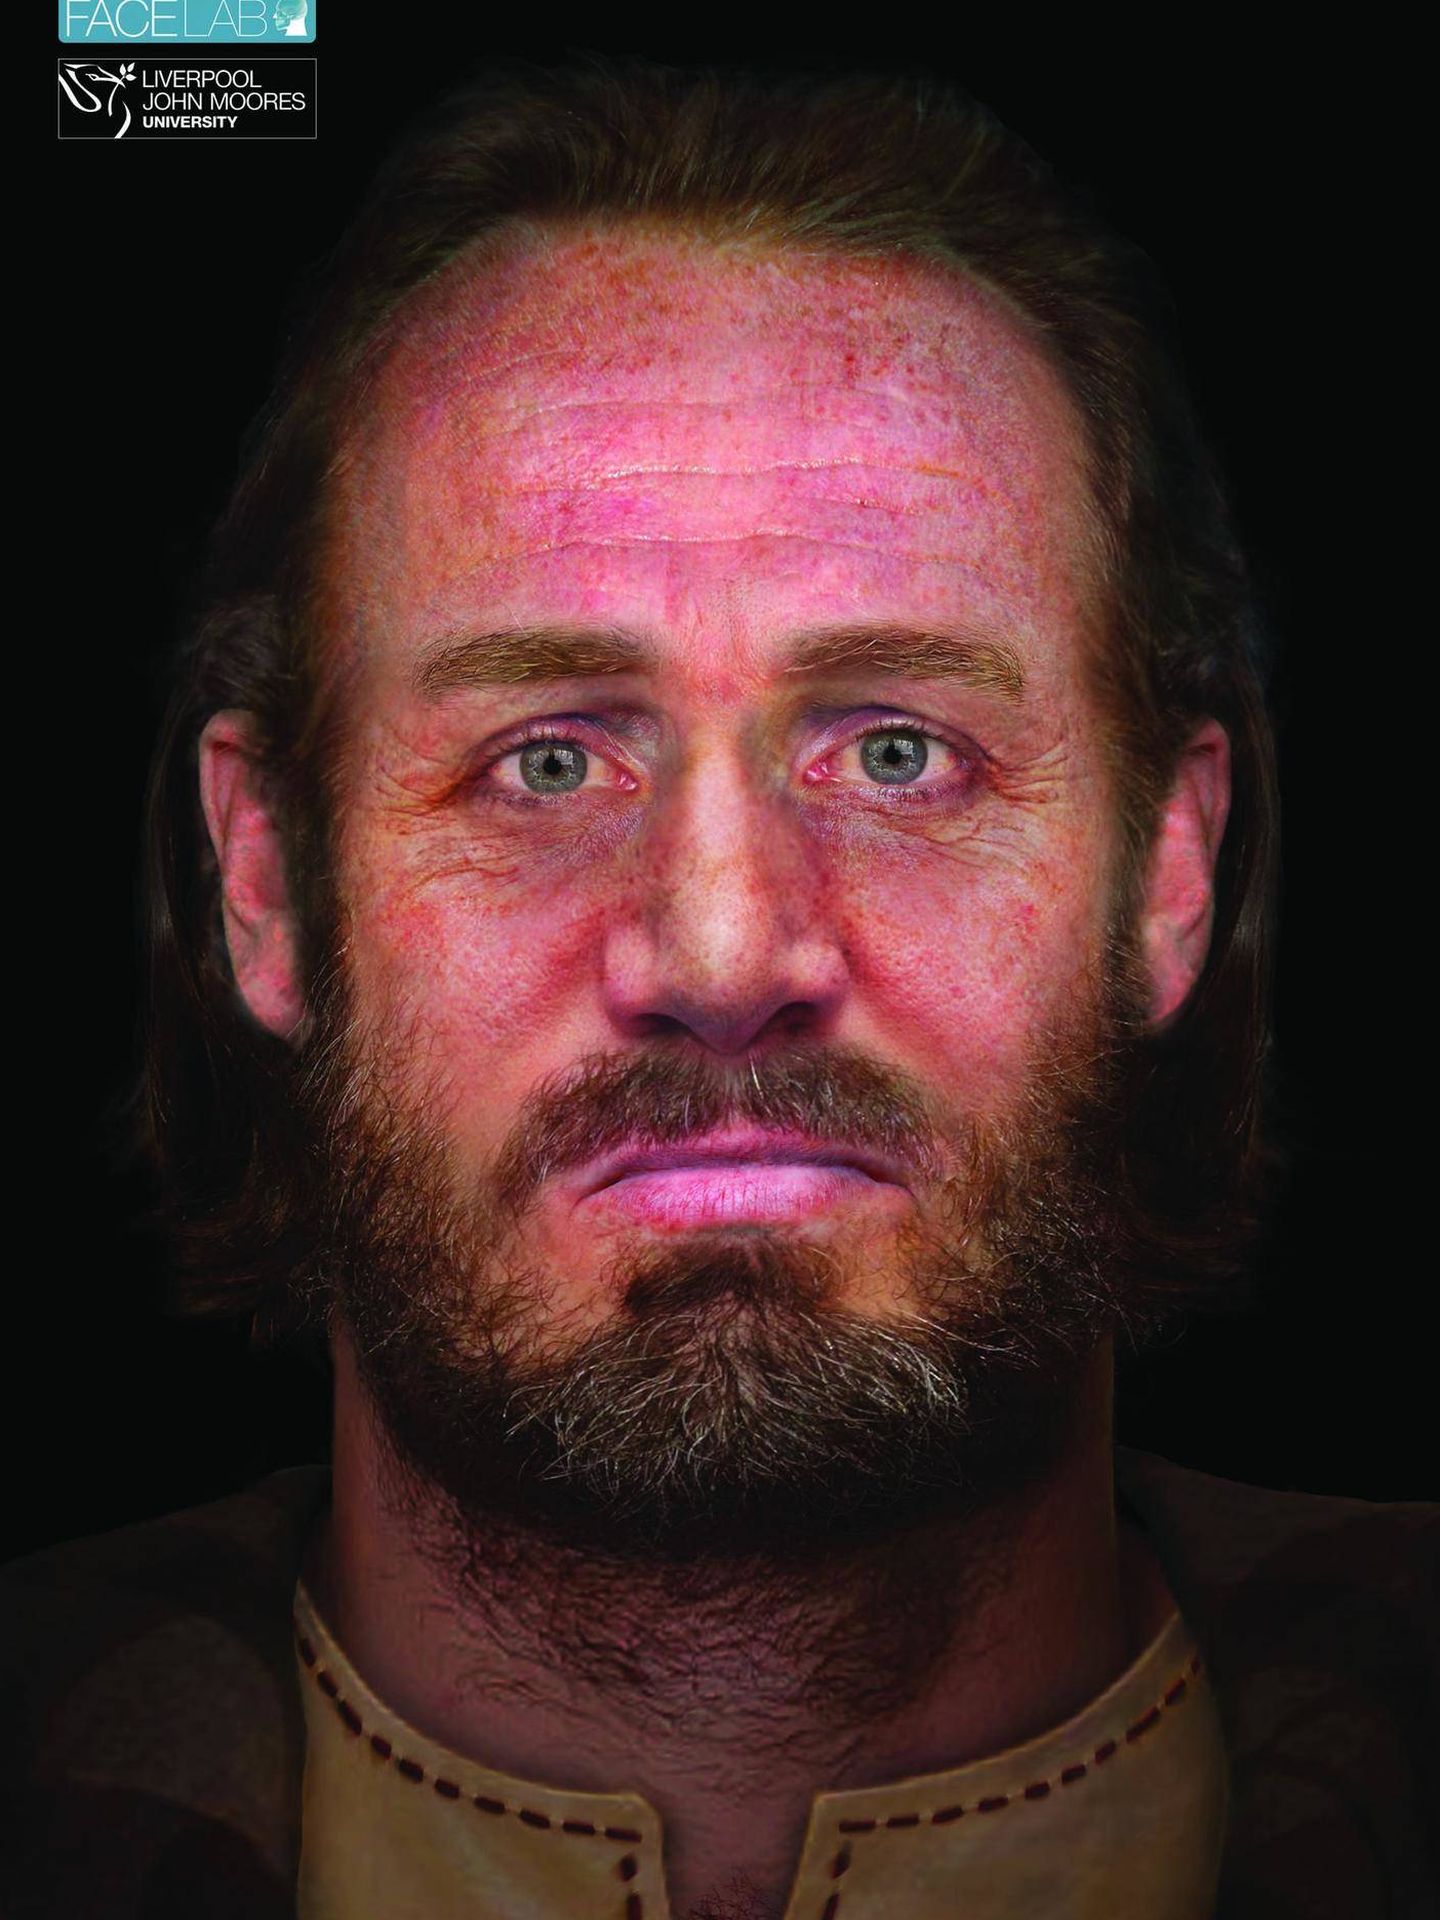 Reconstrucción de la cara del guerrero. (Facelab / Universidad John Moores de Liverpool)